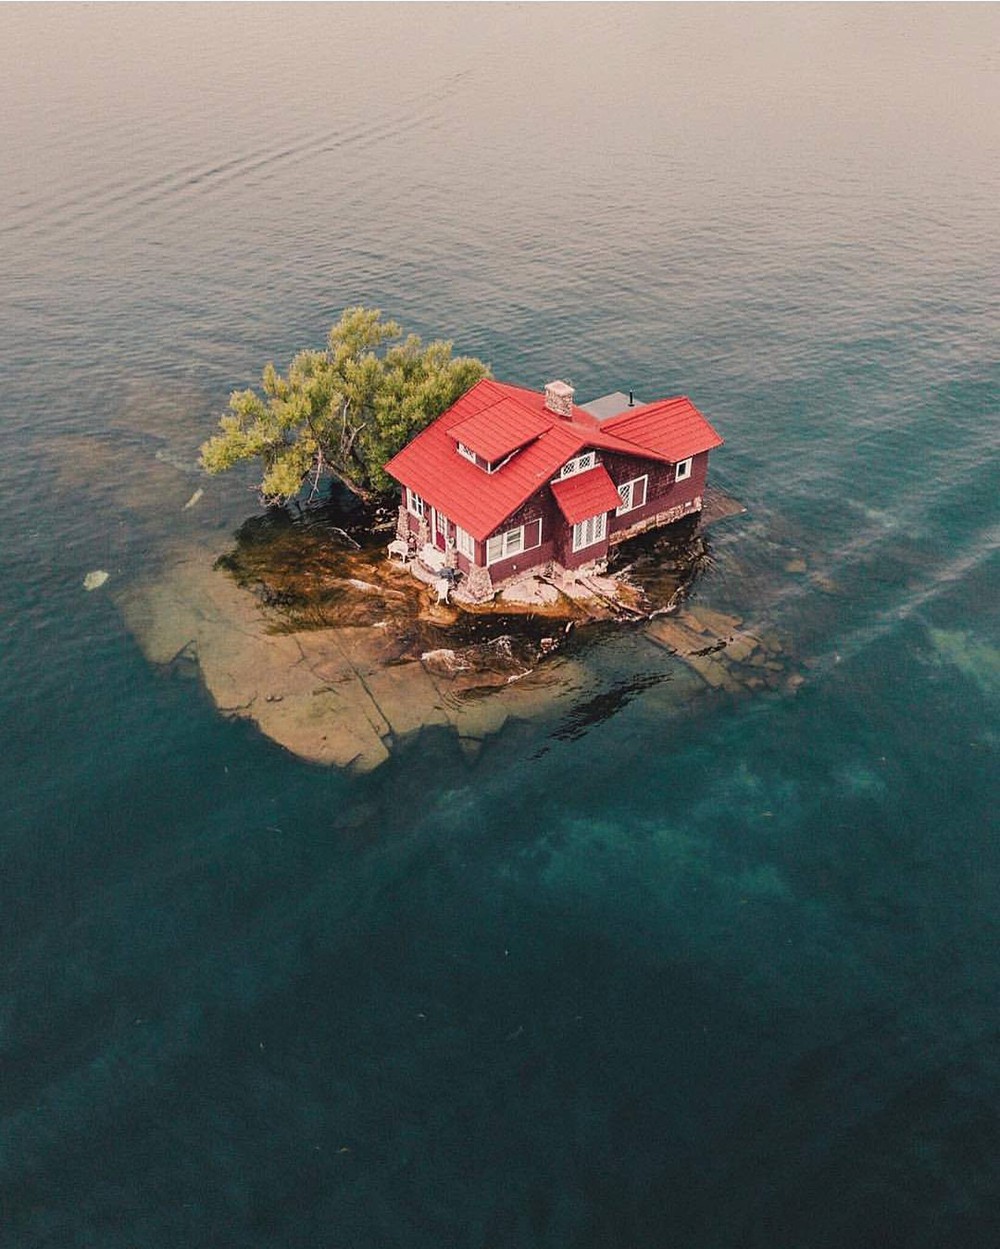 Chỉ đủ chỗ cho đúng một ngôi nhà nhỏ và một cái cây, hòn đảo đáng yêu này chính là nơi ẩn náu tuyệt vời cho những ai thích yên tĩnh - Ảnh 3.